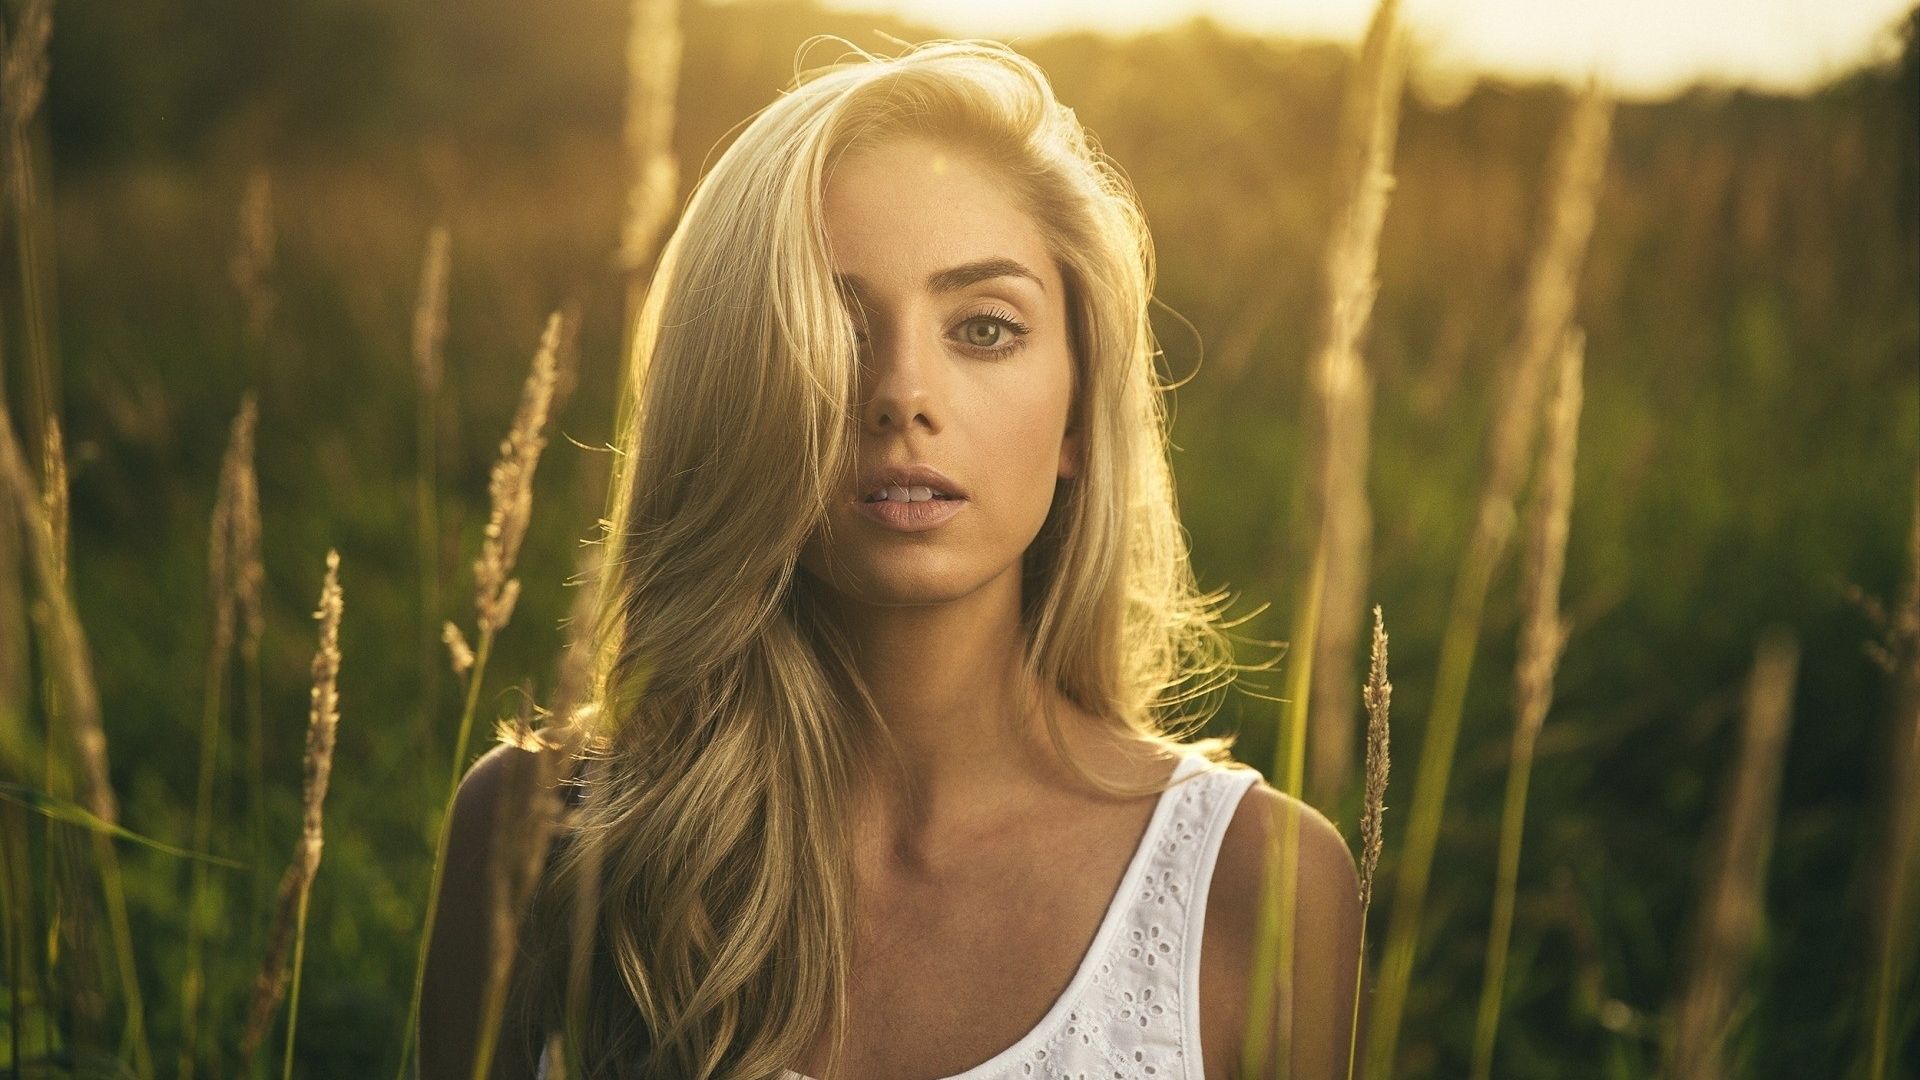 Wallpaper Blonde girl model, outdoor